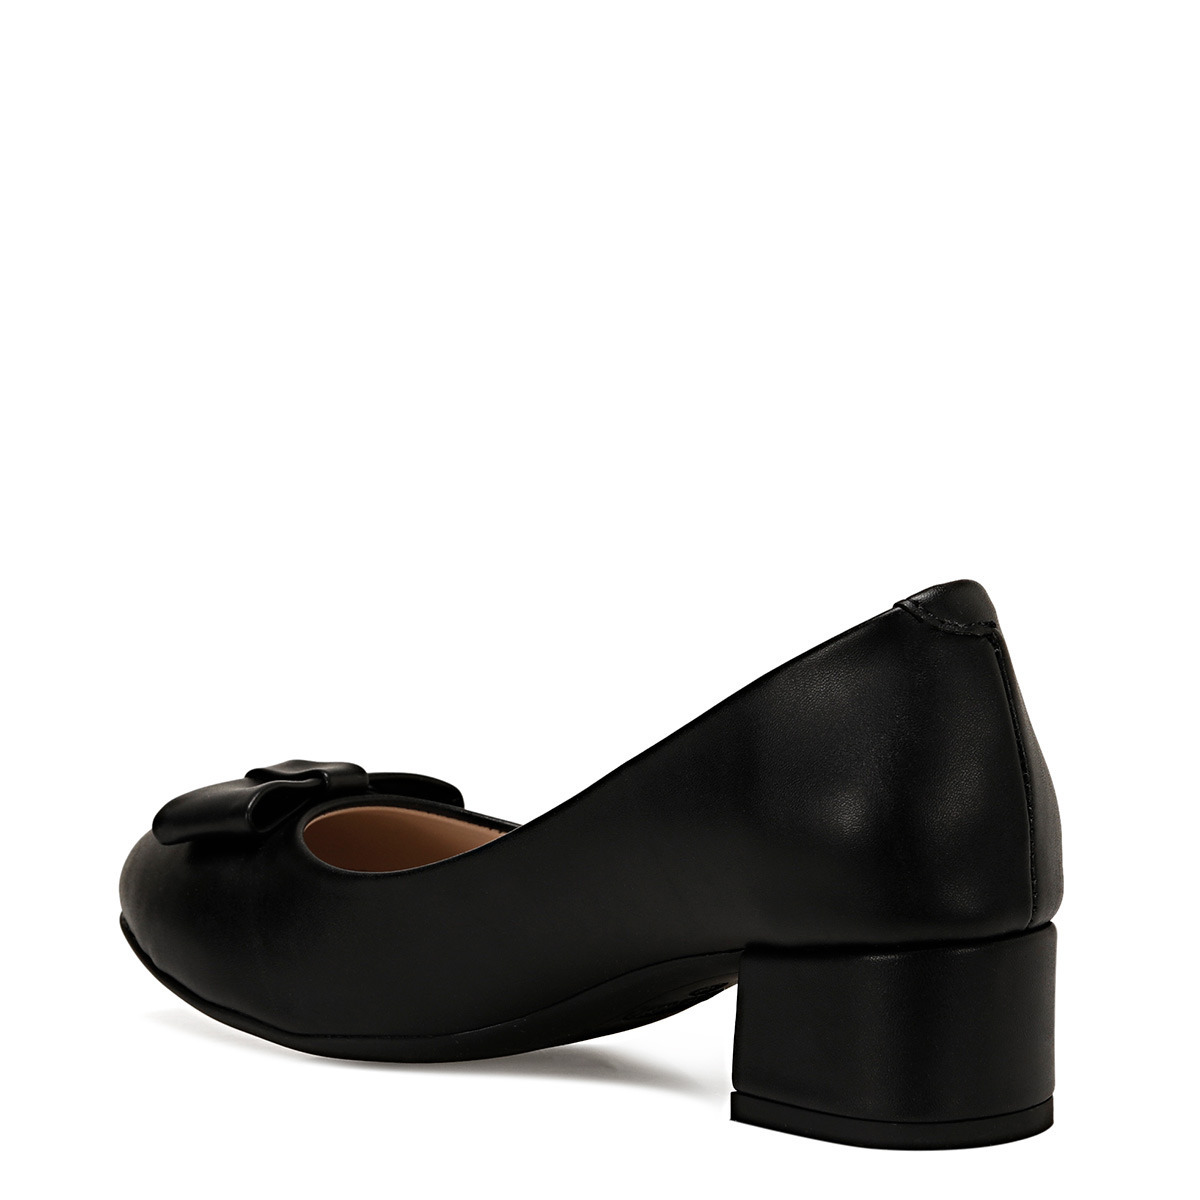 Flo LENIO Siyah Kadın Klasik Topuklu Ayakkabı. 1